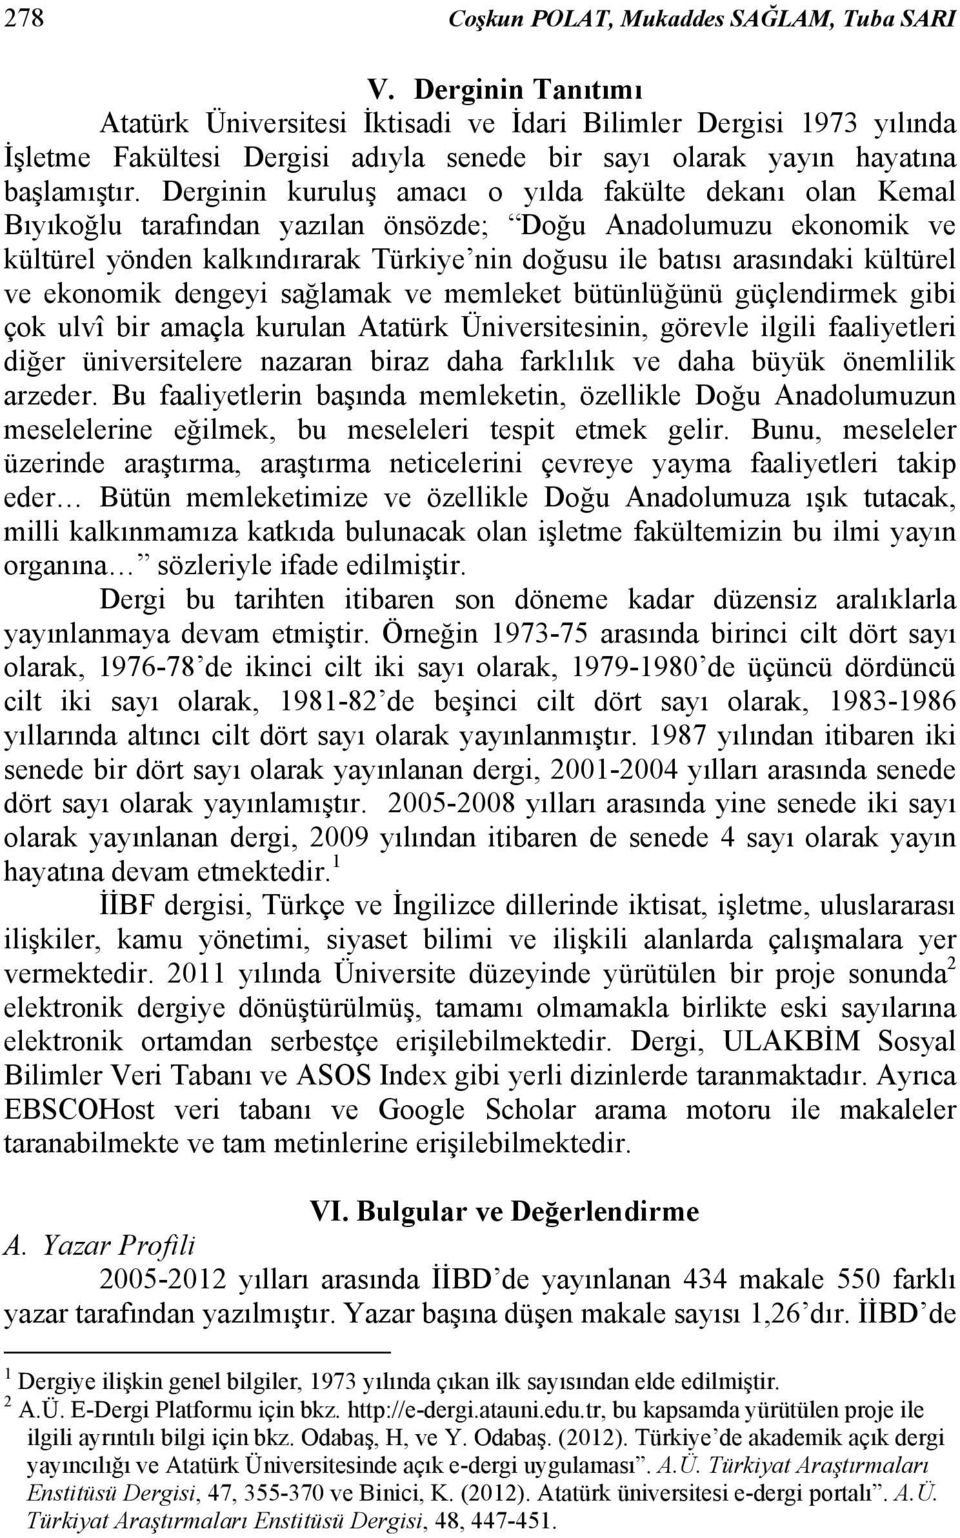 Derginin kuruluş amacı o yılda fakülte dekanı olan Kemal Bıyıkoğlu tarafından yazılan önsözde; Doğu Anadolumuzu ekonomik ve kültürel yönden kalkındırarak Türkiye nin doğusu ile batısı arasındaki